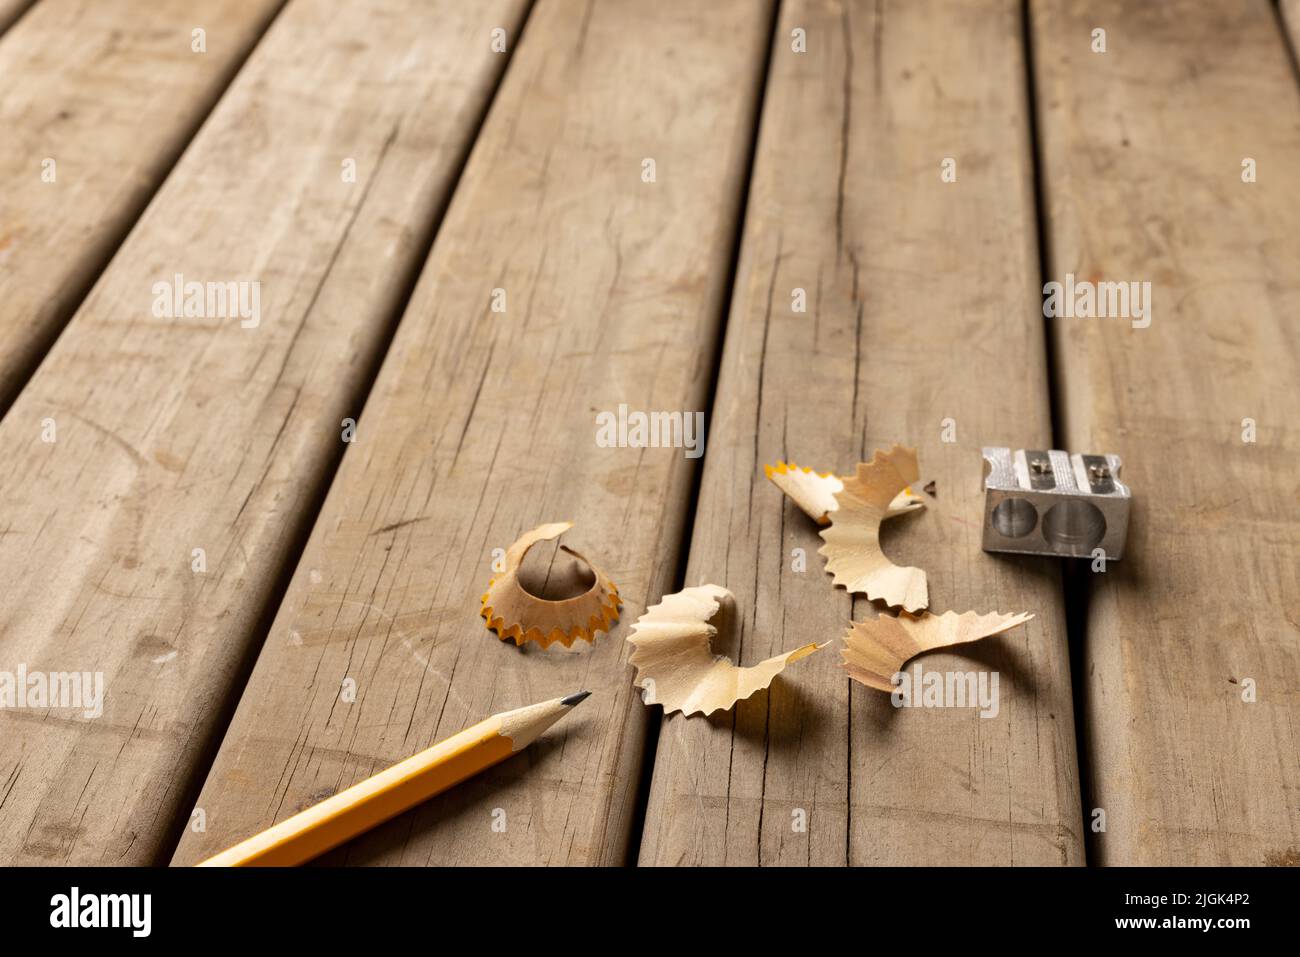 Image d'un crayon, d'un taille-crayon et d'un peelings sur fond de bois Banque D'Images